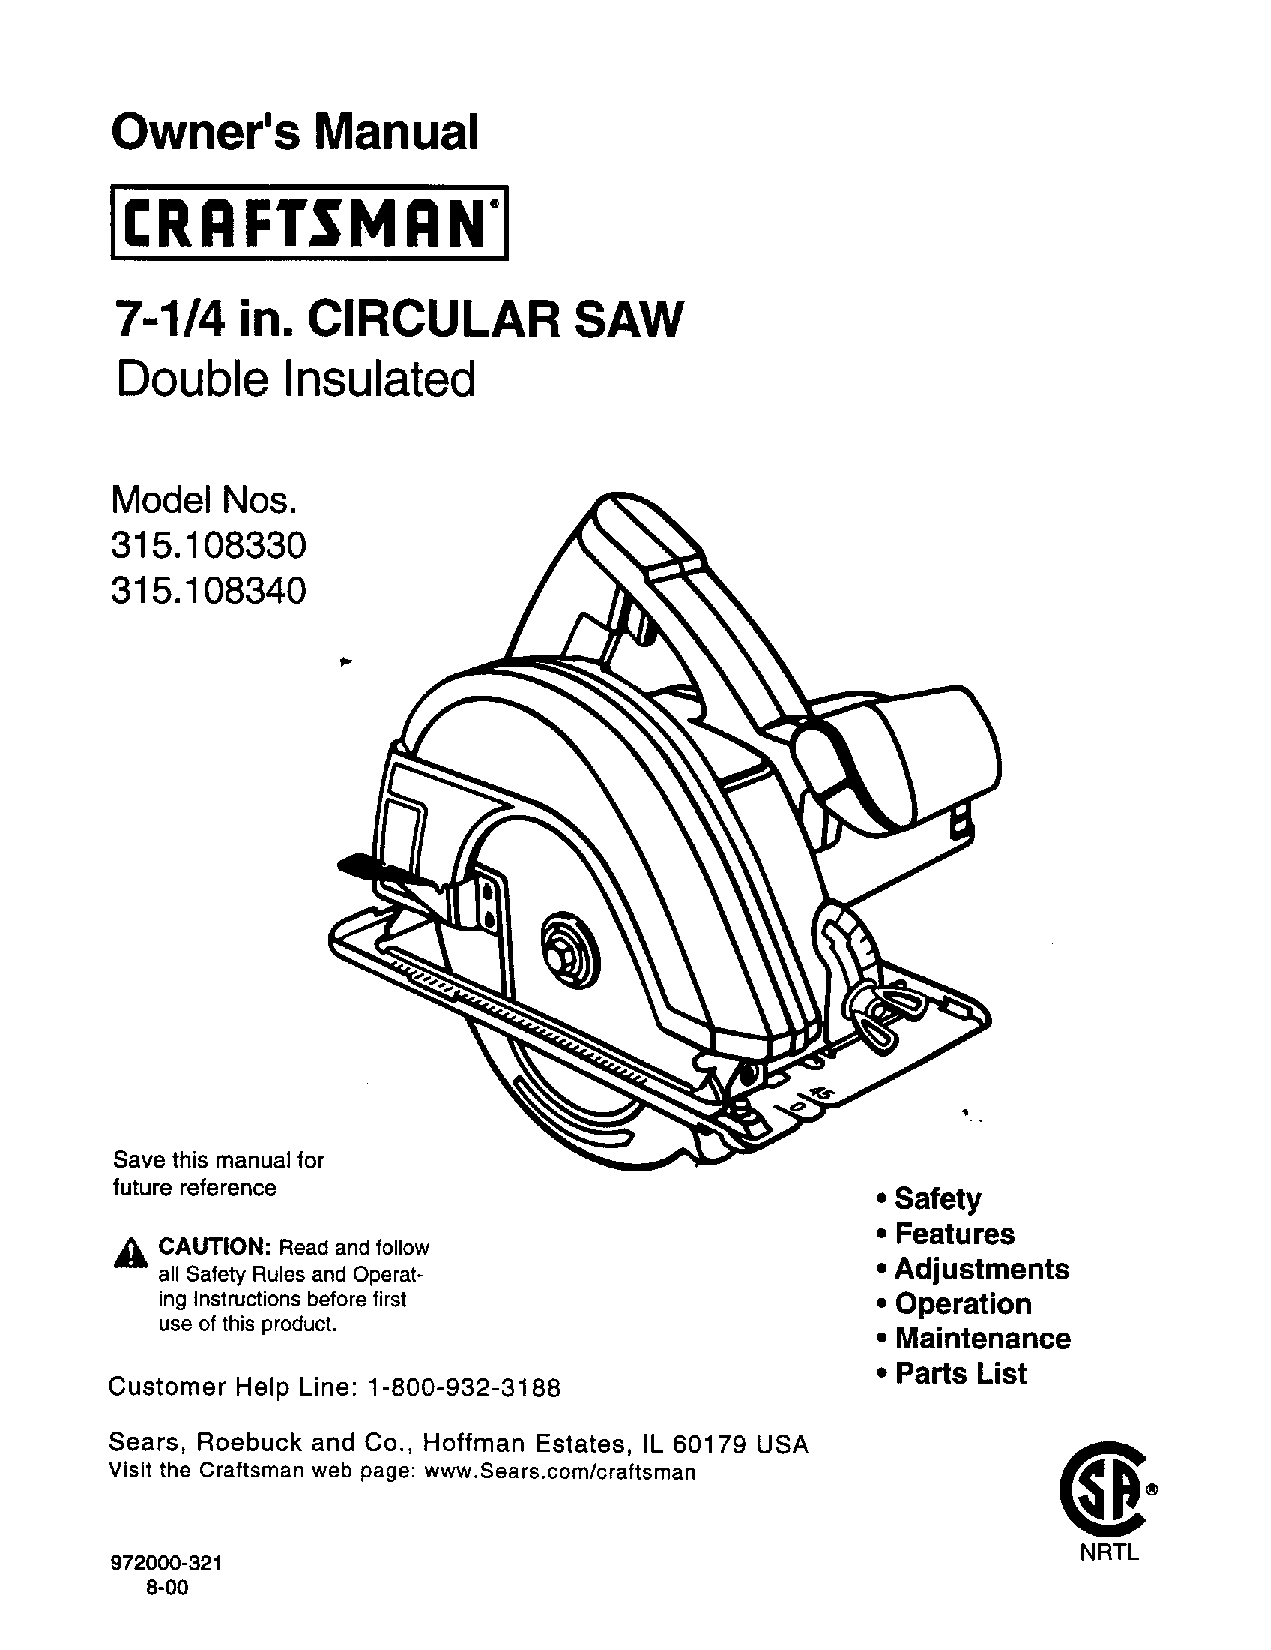 Craftsman 315.10833, 315.10834 User Manual